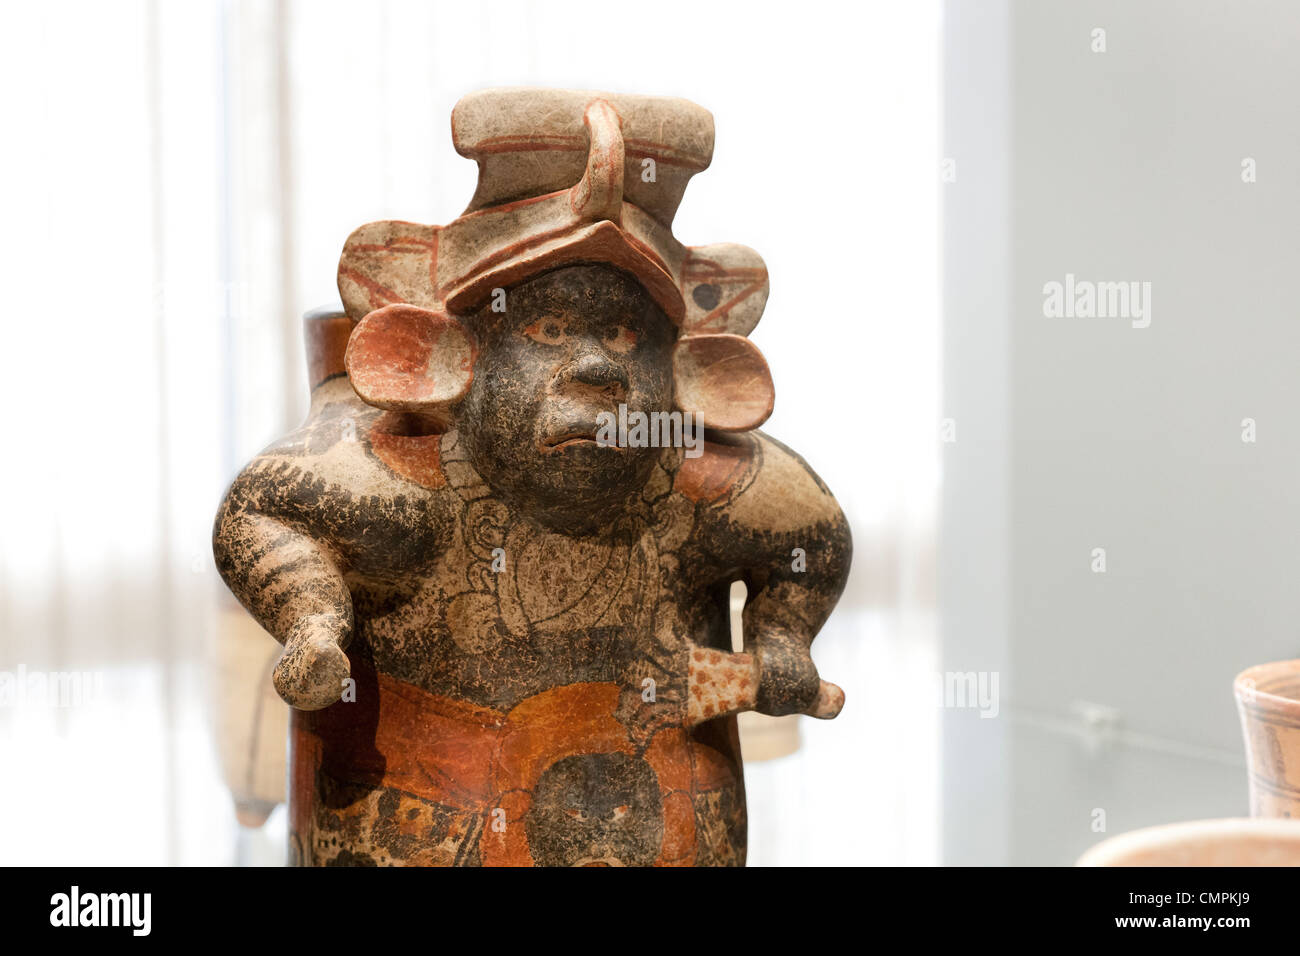 Jarrón de cerámica maya de un jorobado enano. Museo Chileno de Arte Precolombino, Museo Chileno de Arte Precolombino Santiago Chile. Foto de stock